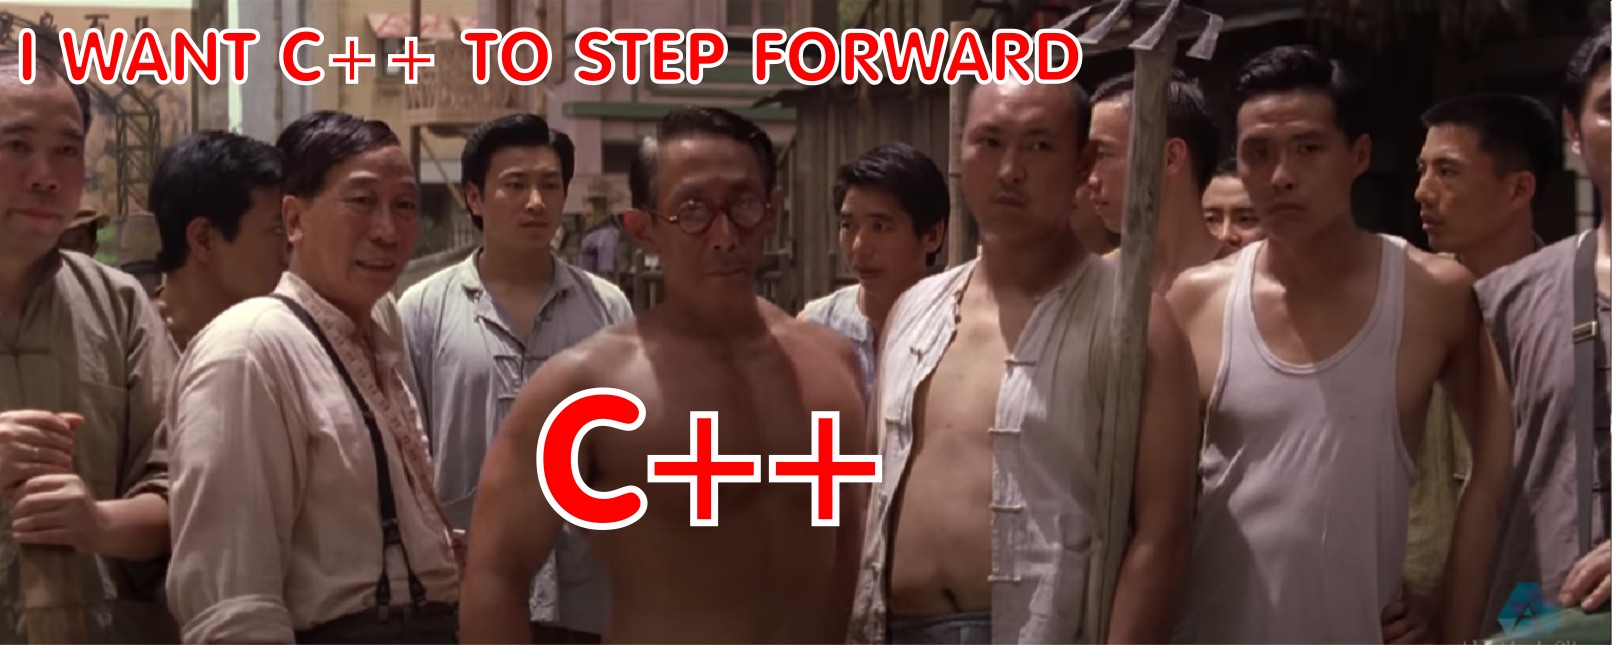 c++ is amazing